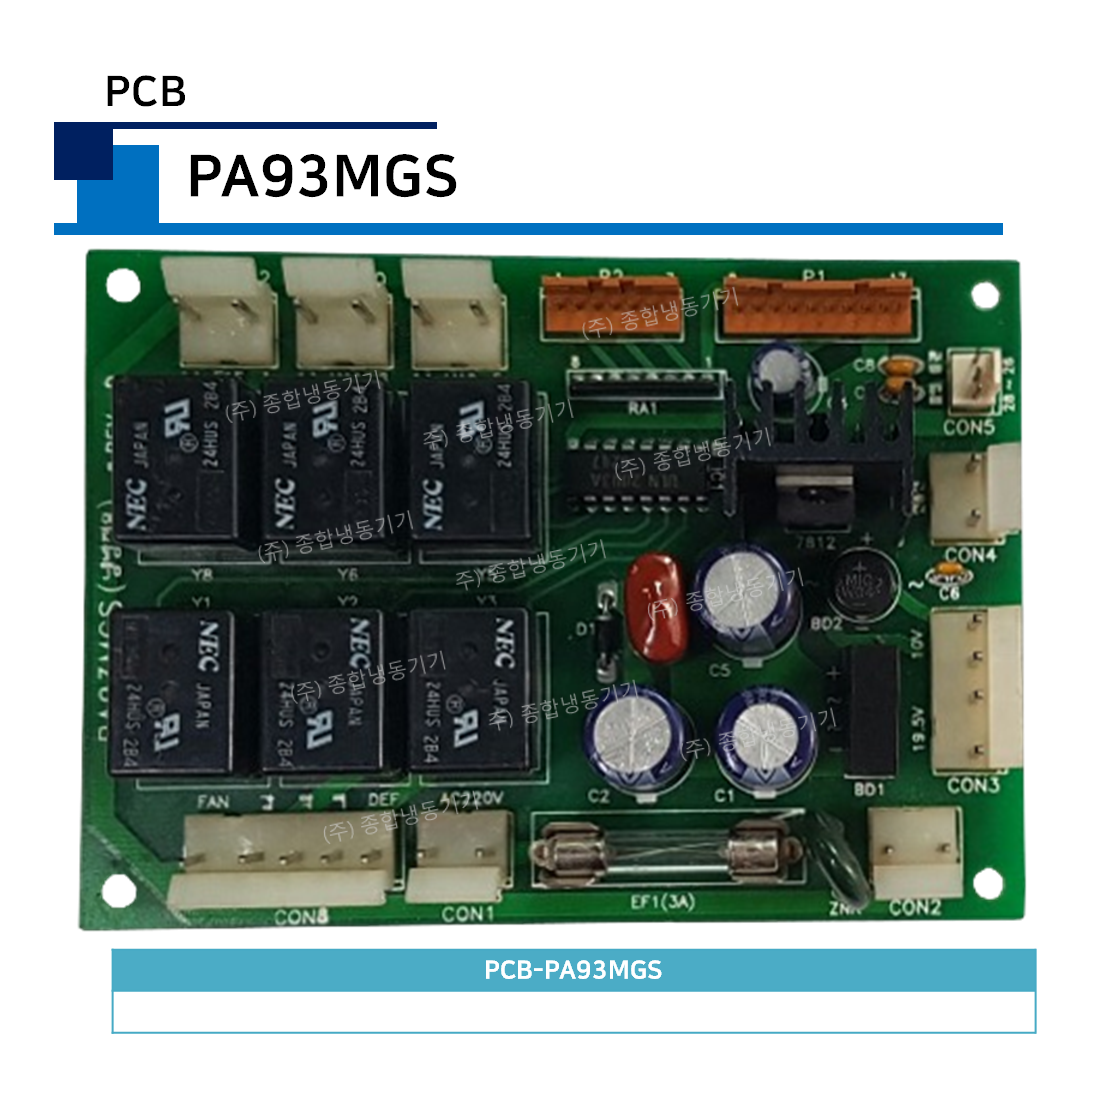 PCB-PA93MGS